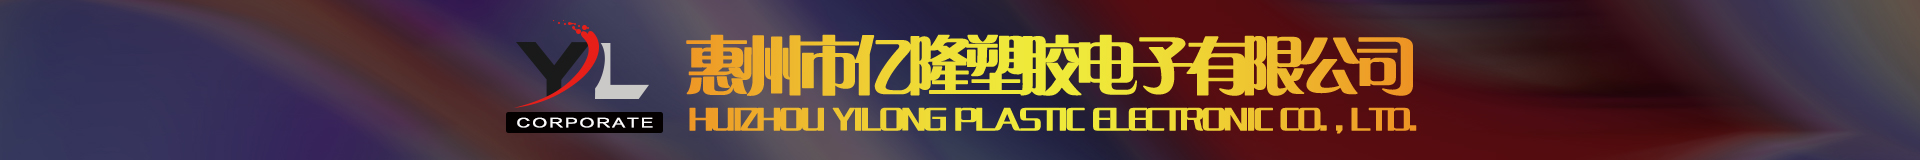 惠州市亿隆塑胶电子有限公司